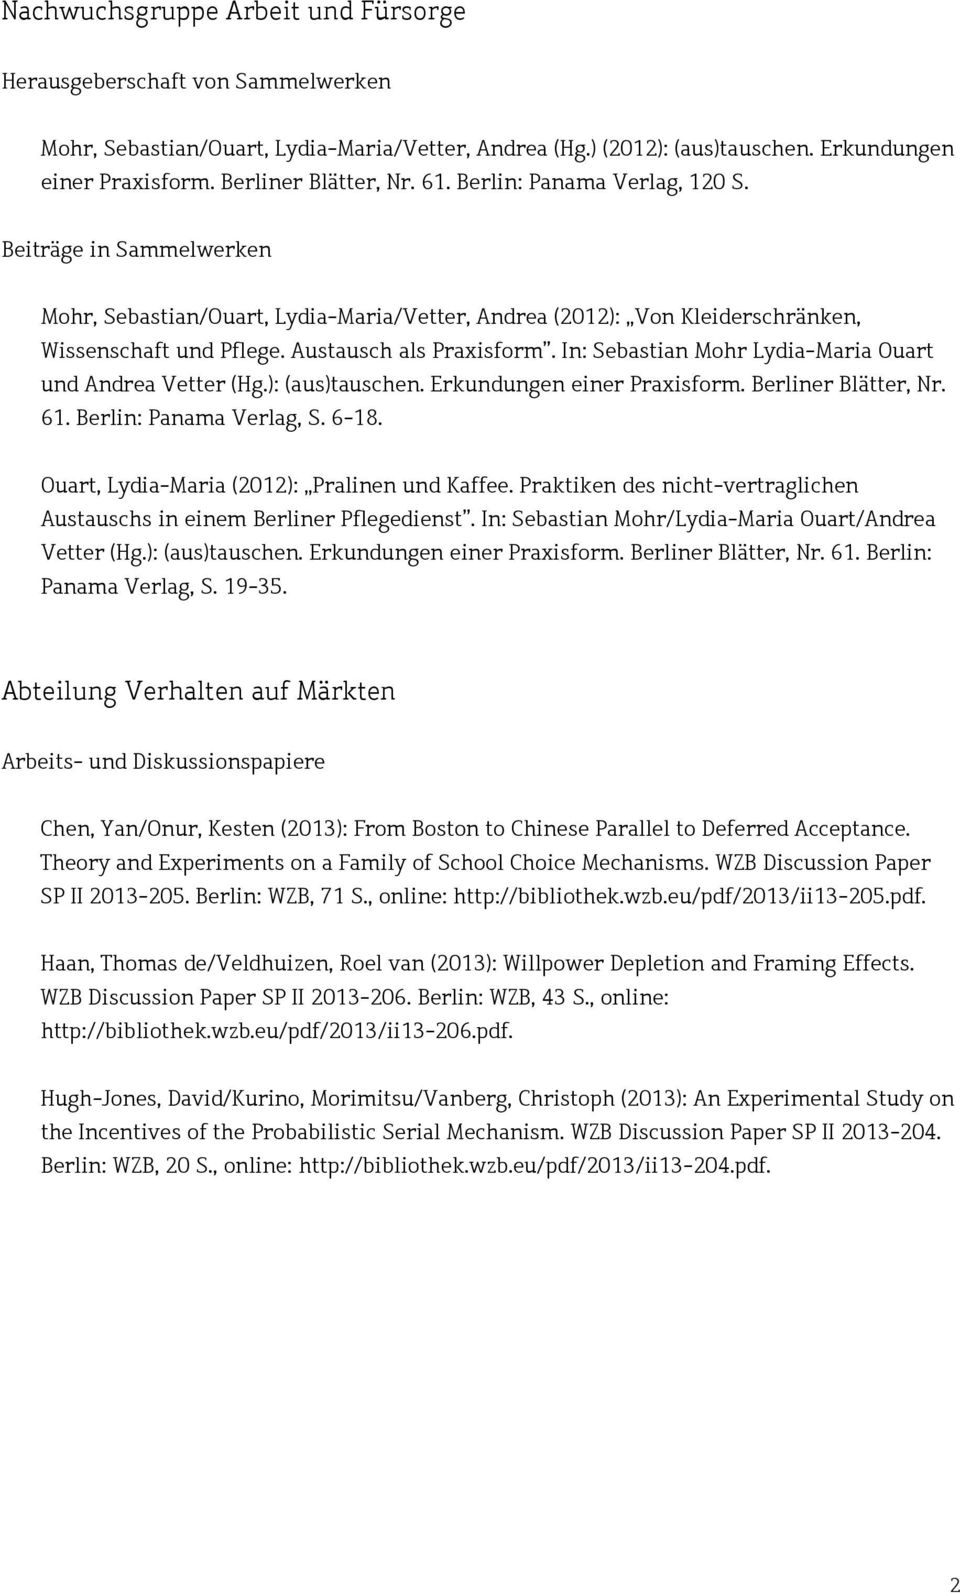 In: Sebastian Mohr Lydia-Maria Ouart und Andrea Vetter (Hg.): (aus)tauschen. Erkundungen einer Praxisform. Berliner Blätter, Nr. 61. Berlin: Panama Verlag, S. 6-18.